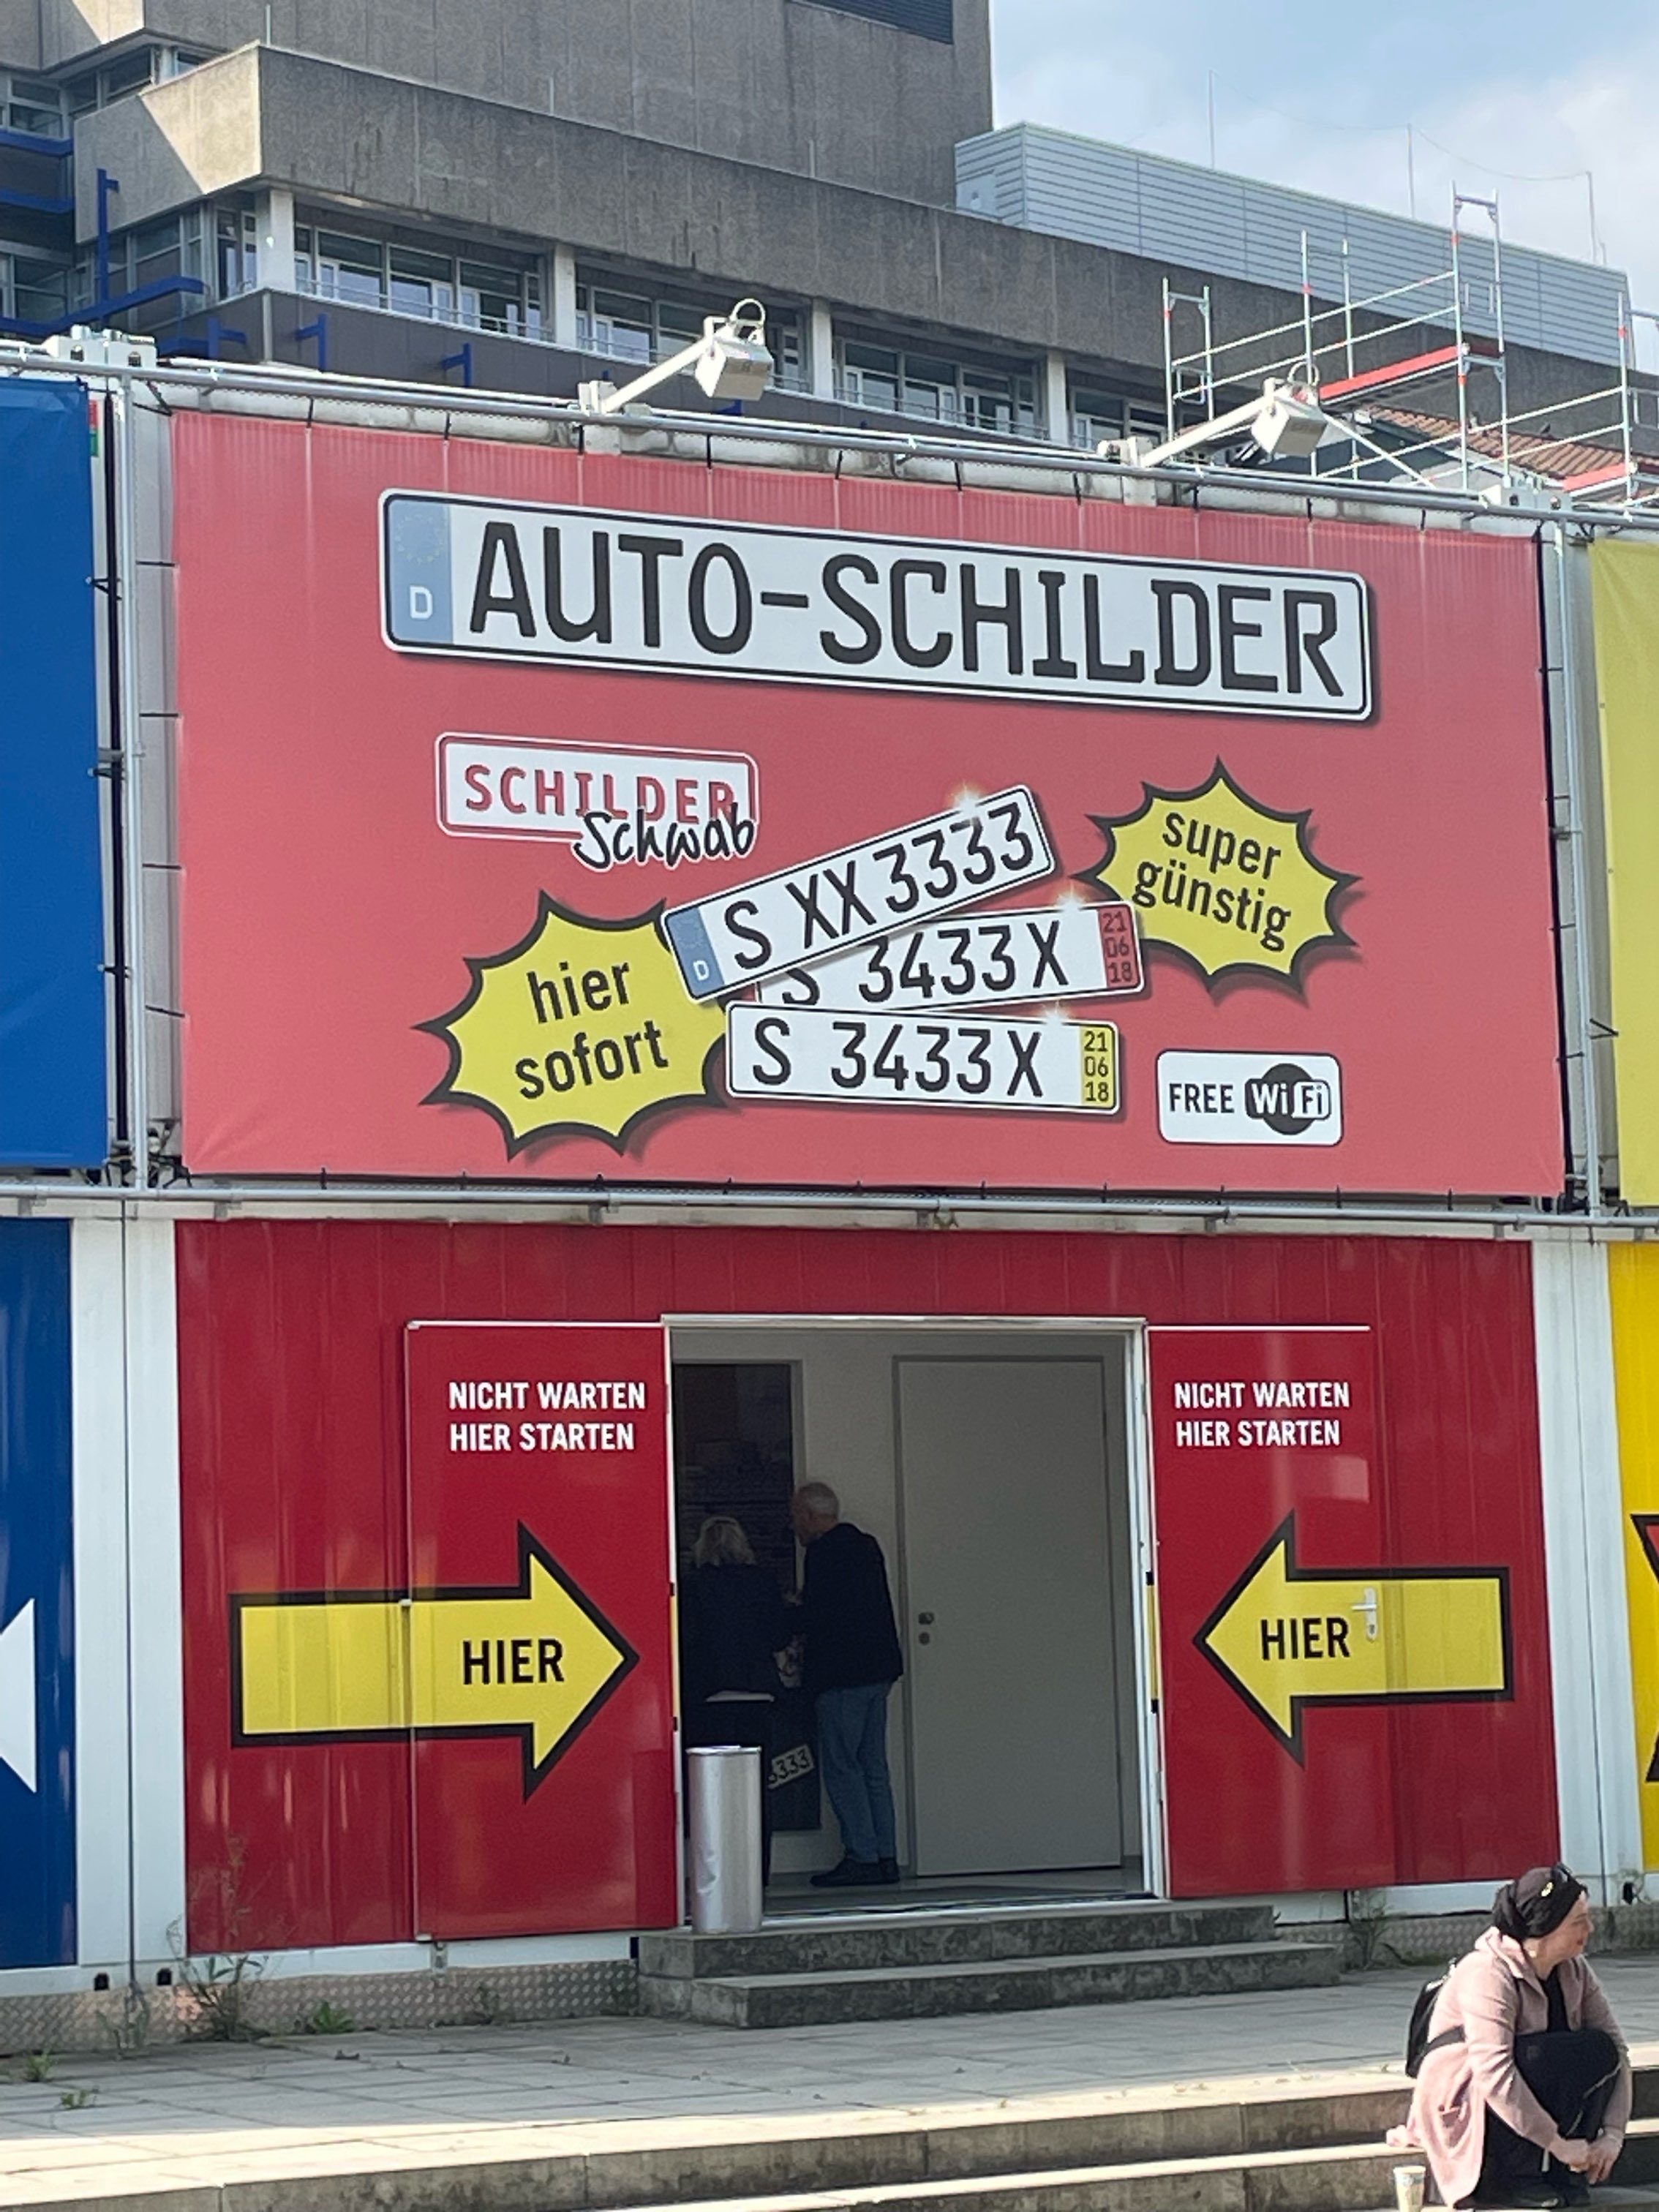 Bild 1 Schilder Schwab GmbH & Co. KG Krailenshaldenstr.38 in Stuttgart